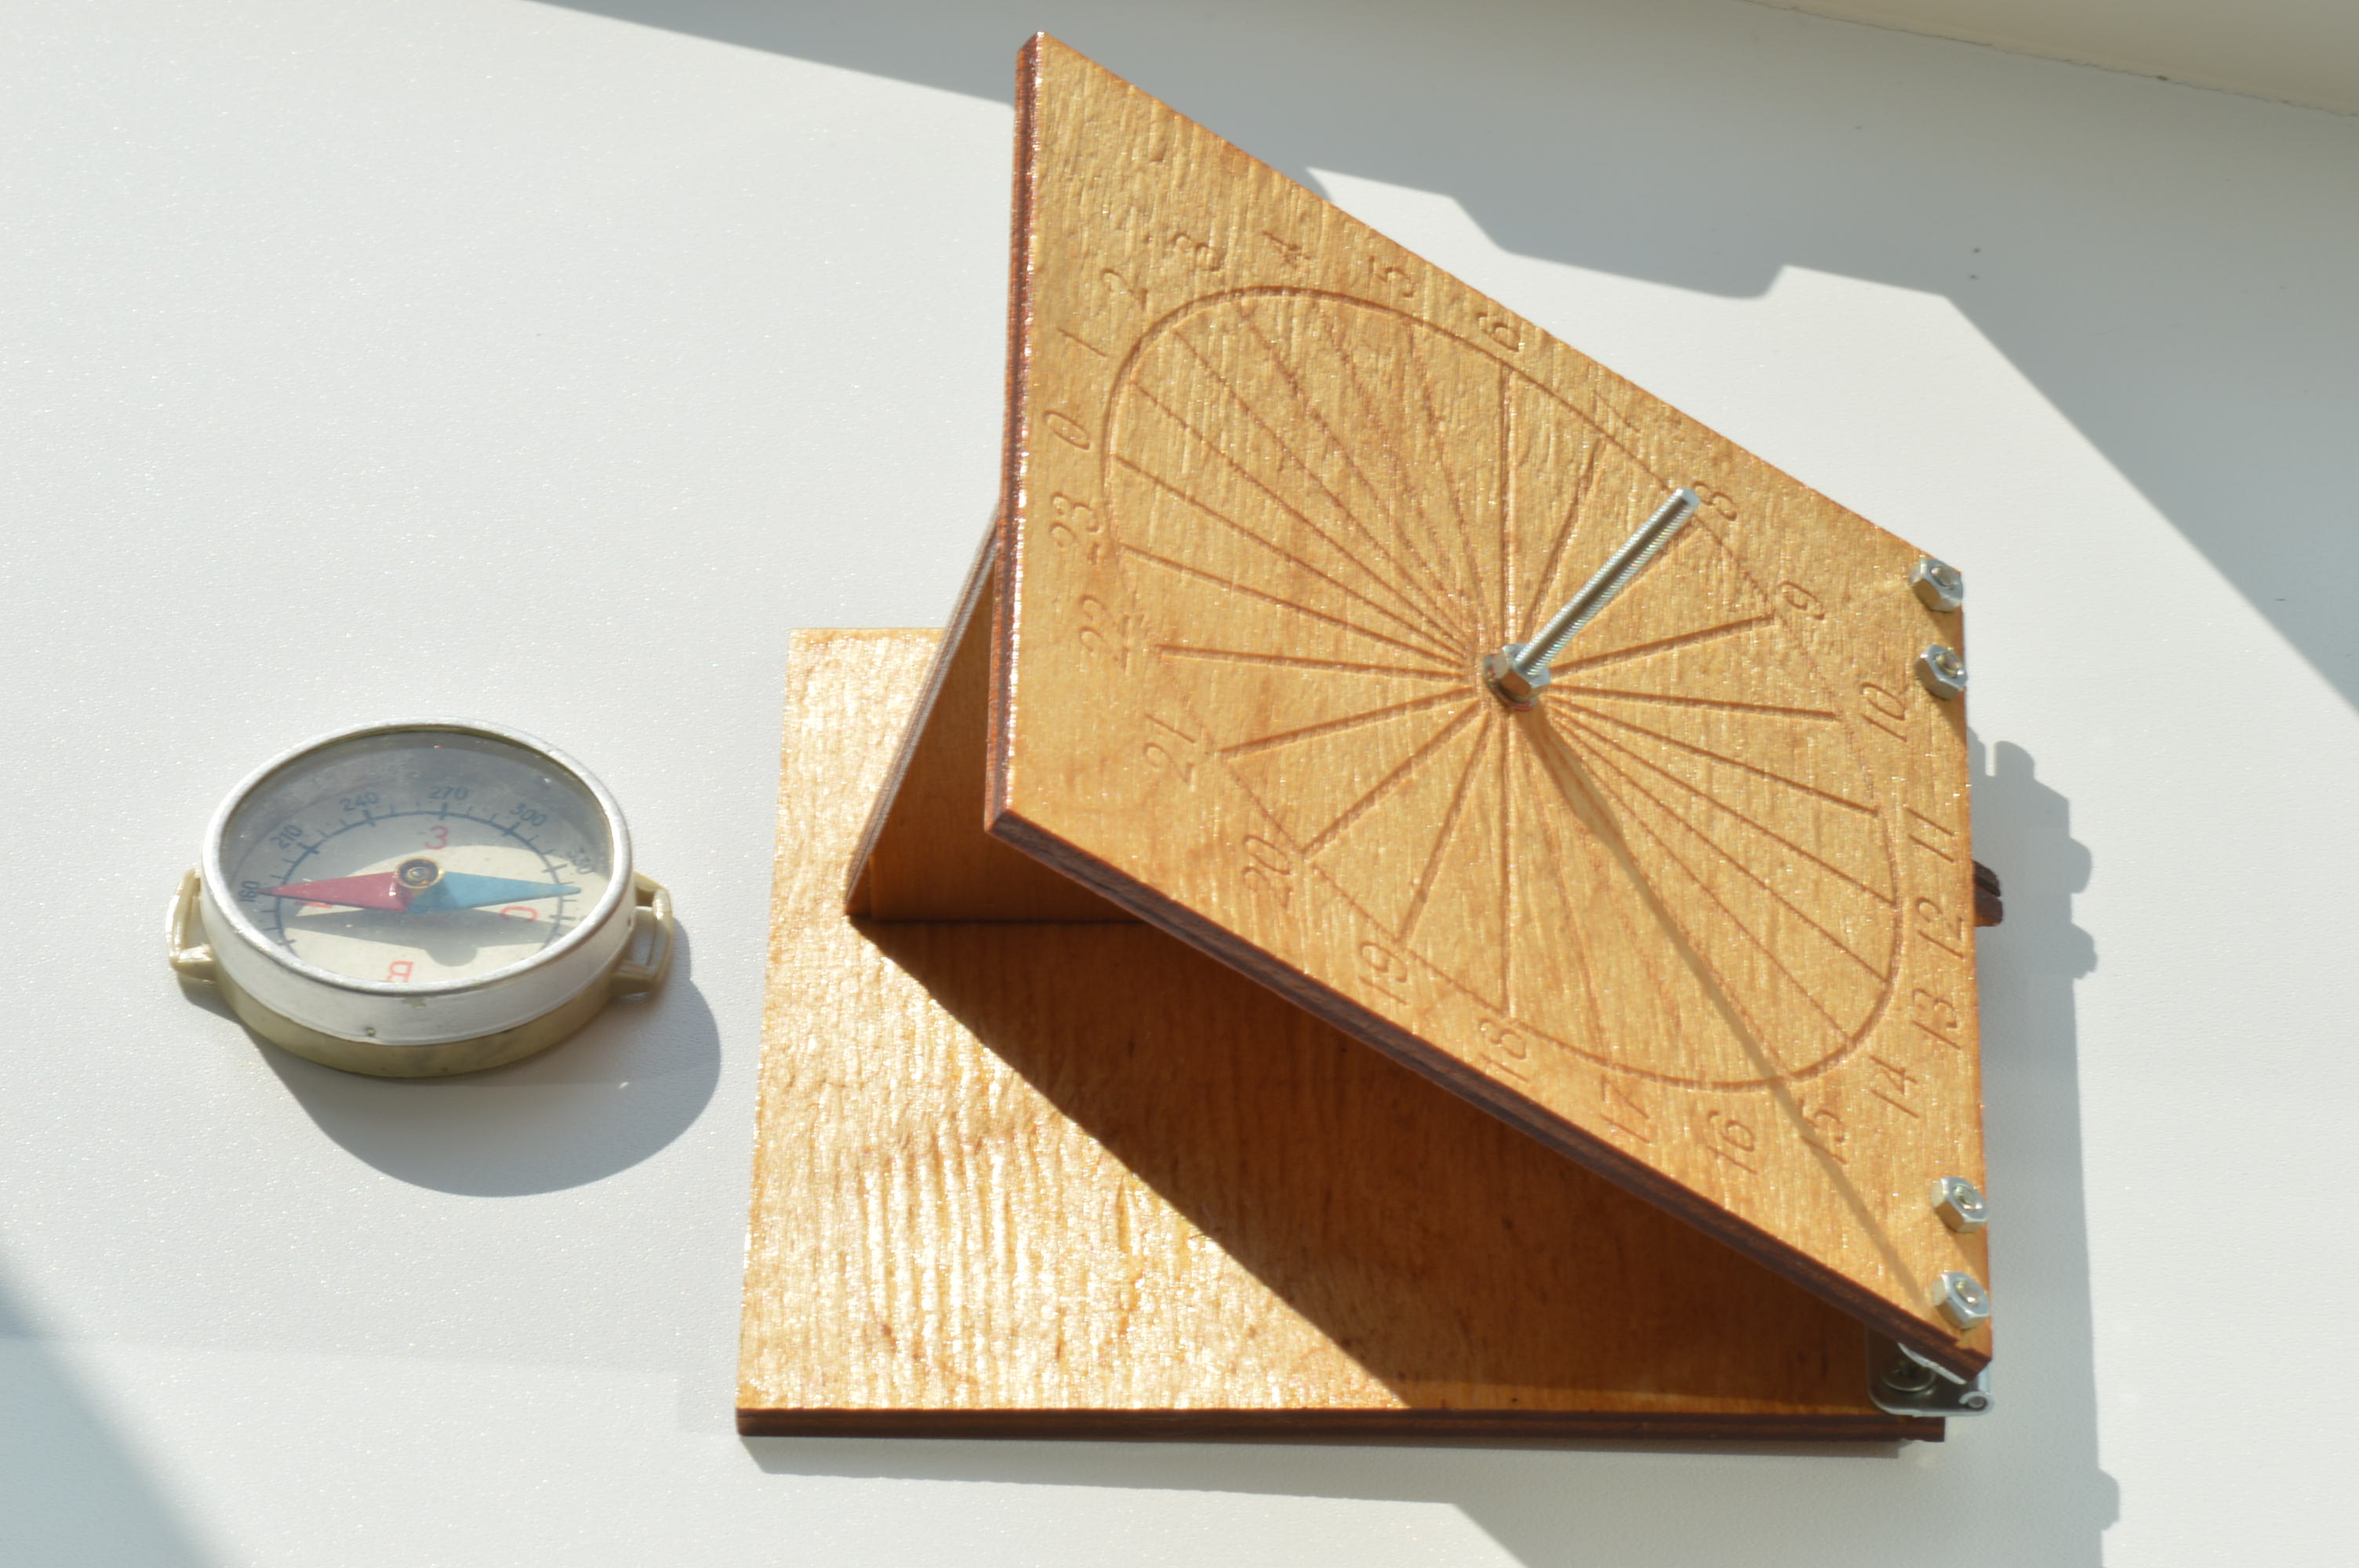 Ориентирование экваториальных солнечных часов. Фото автора.